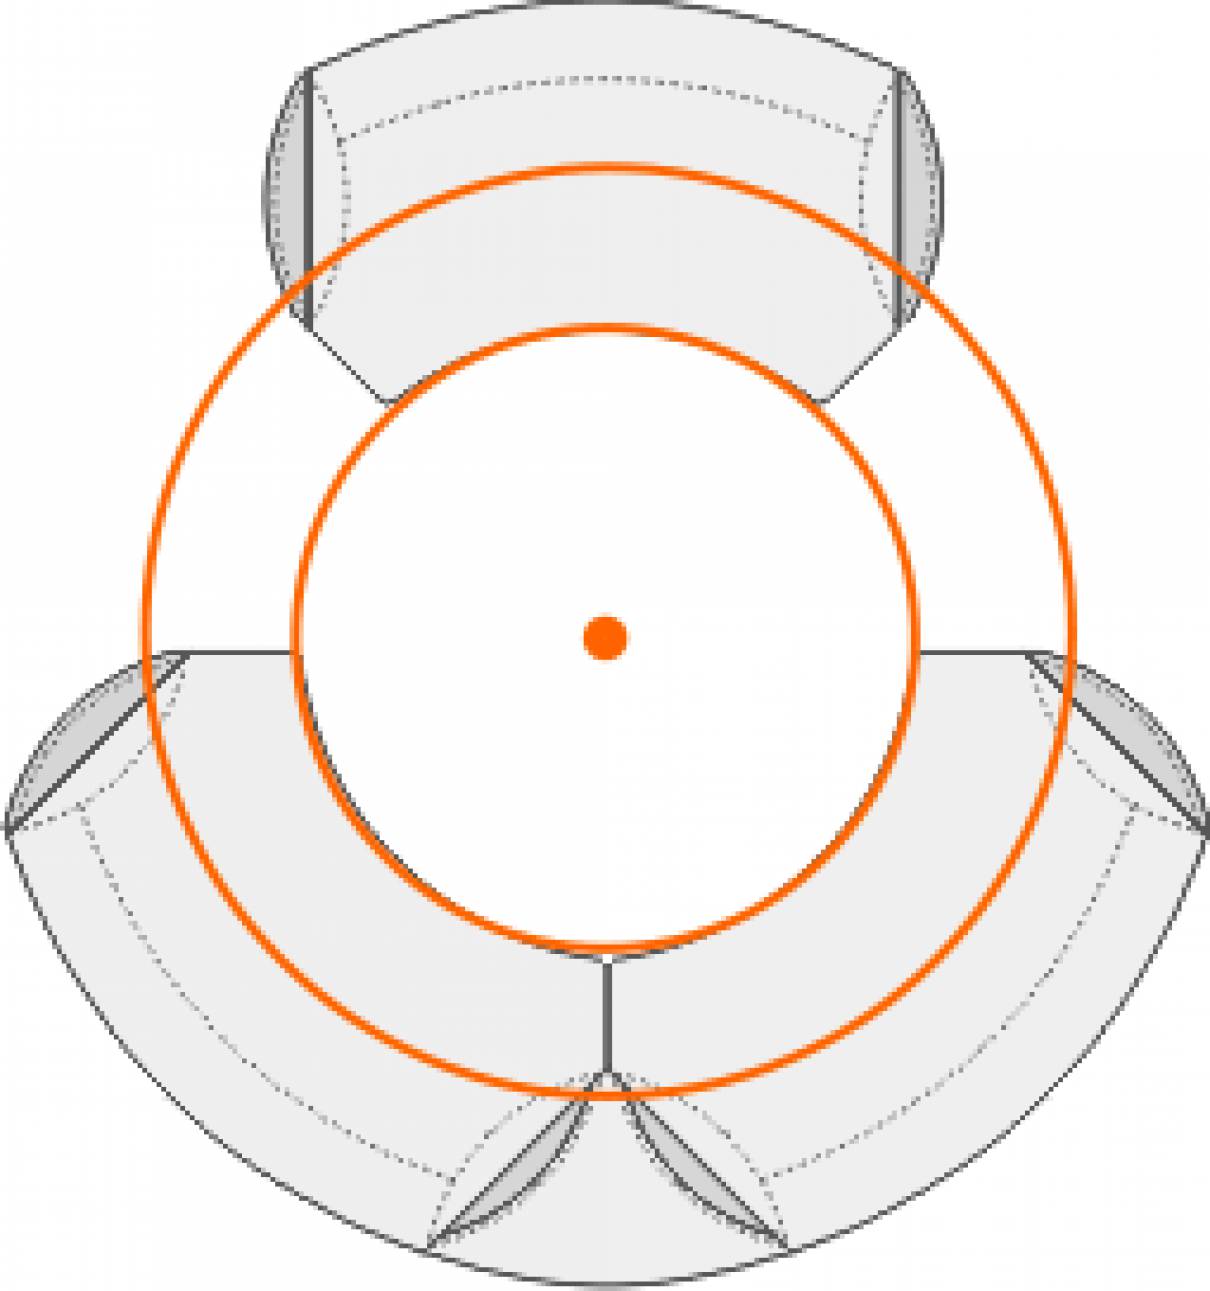 Circon Executive Classic Anthropometric Table Tops Are Circular